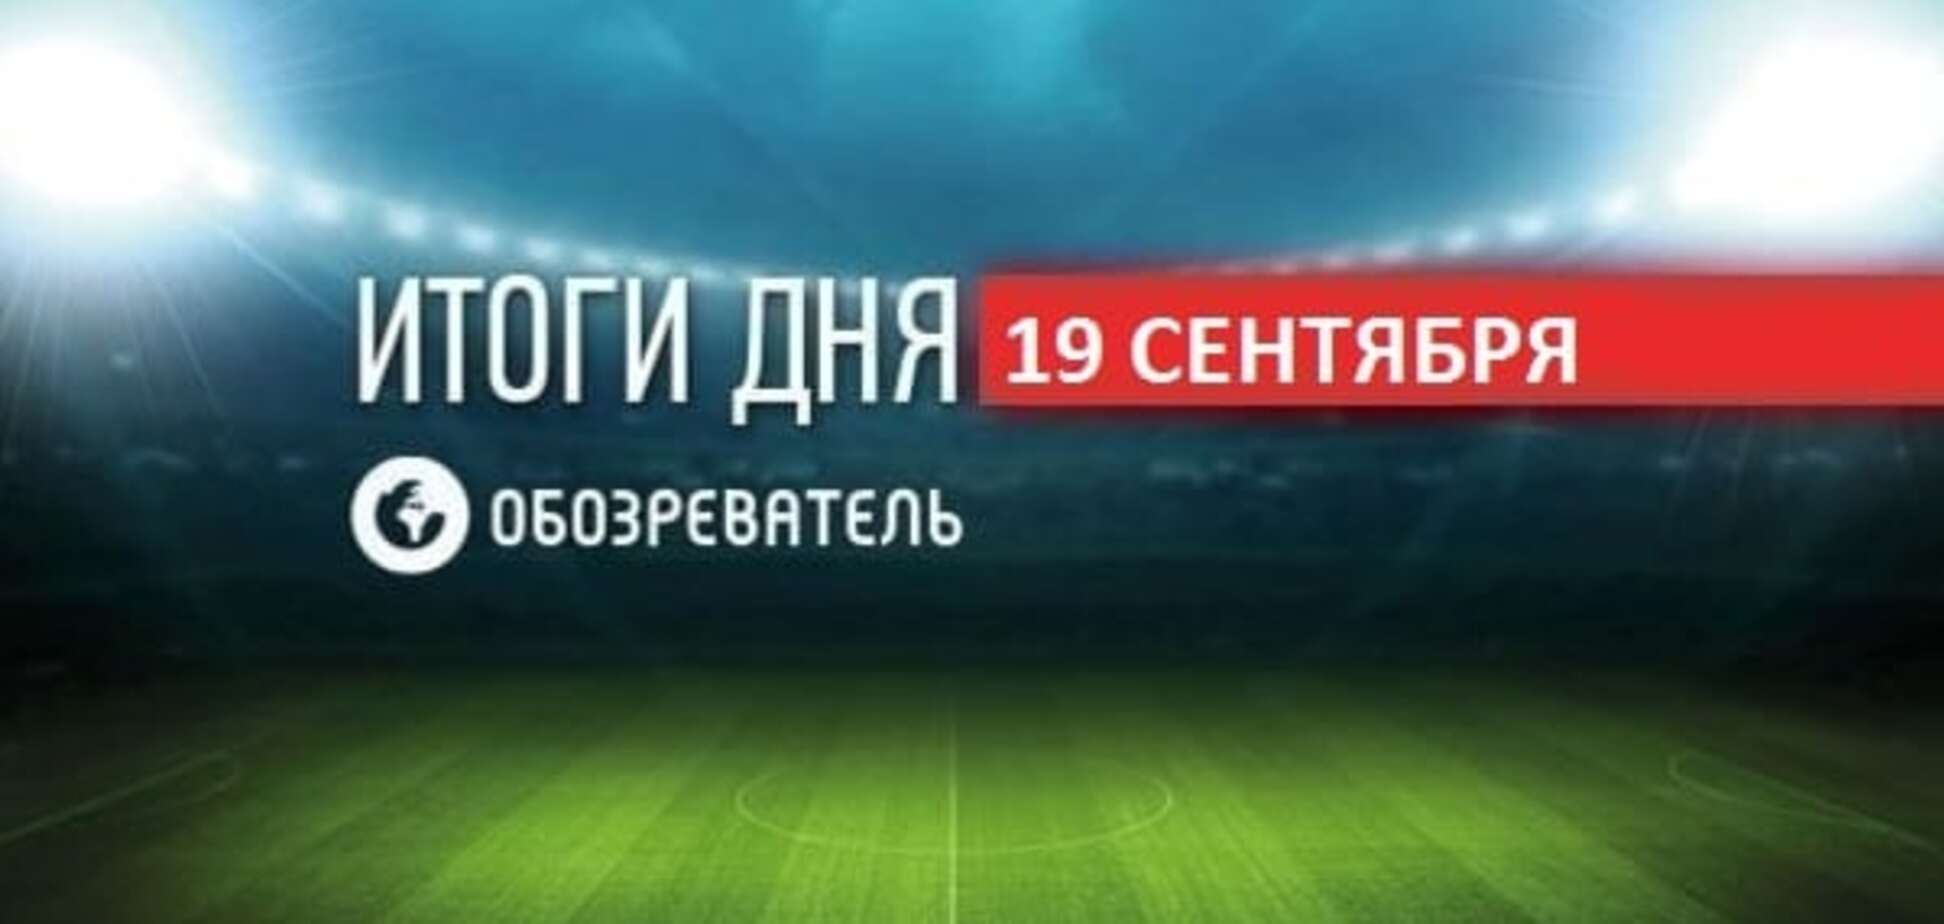 Рекорды Украины на Паралимпиаде-2016. Спортивные итоги 19 сентября